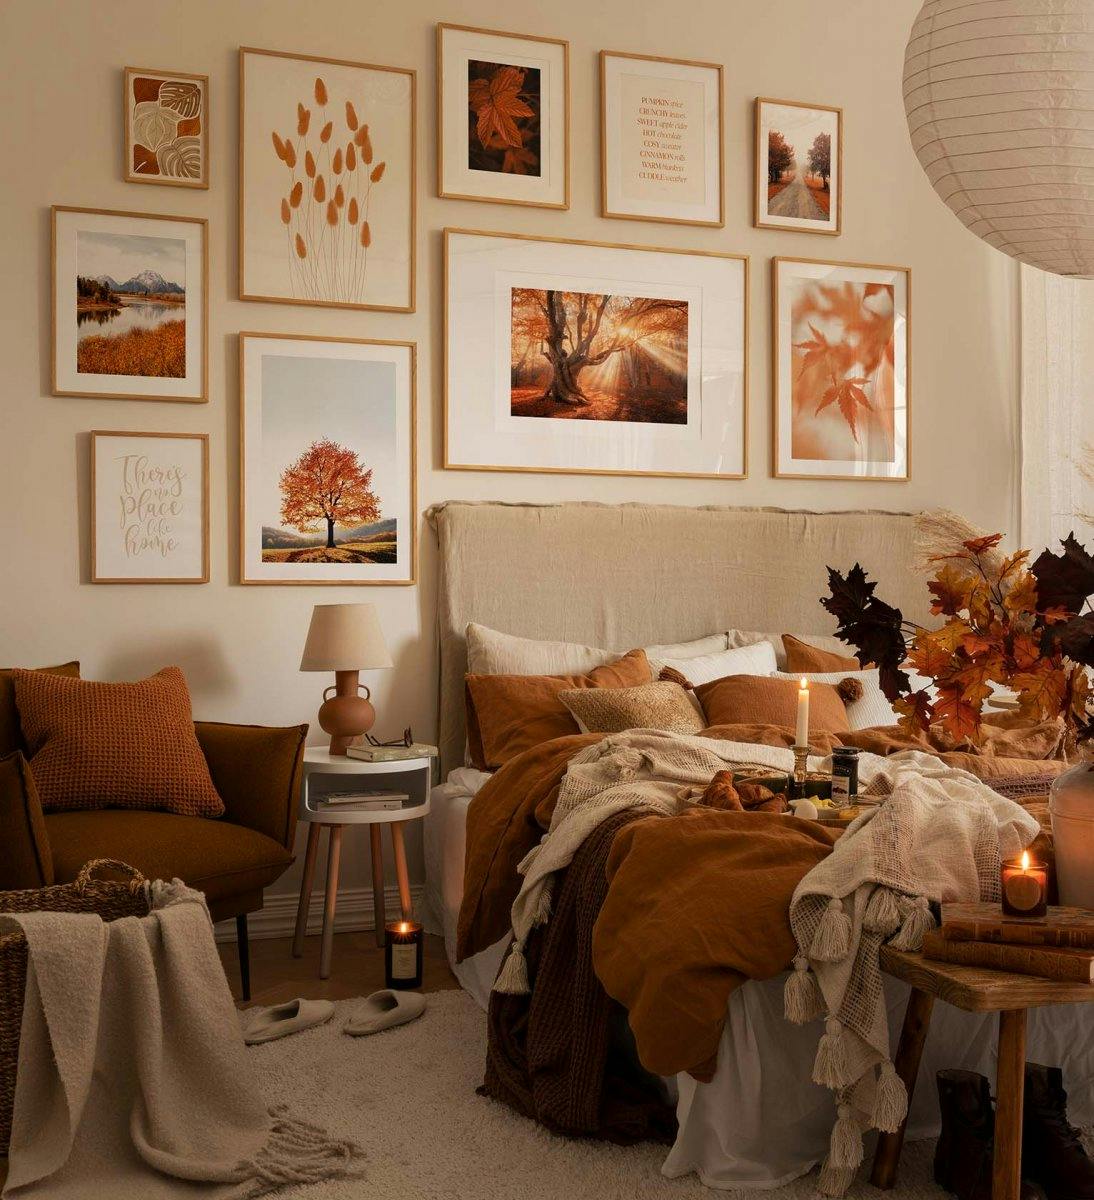 جدار معرض مستوحى من الخريف مع مطبوعات وصور فوتوغرافية بإطارات برتقالية وبلوط لغرفة النوم